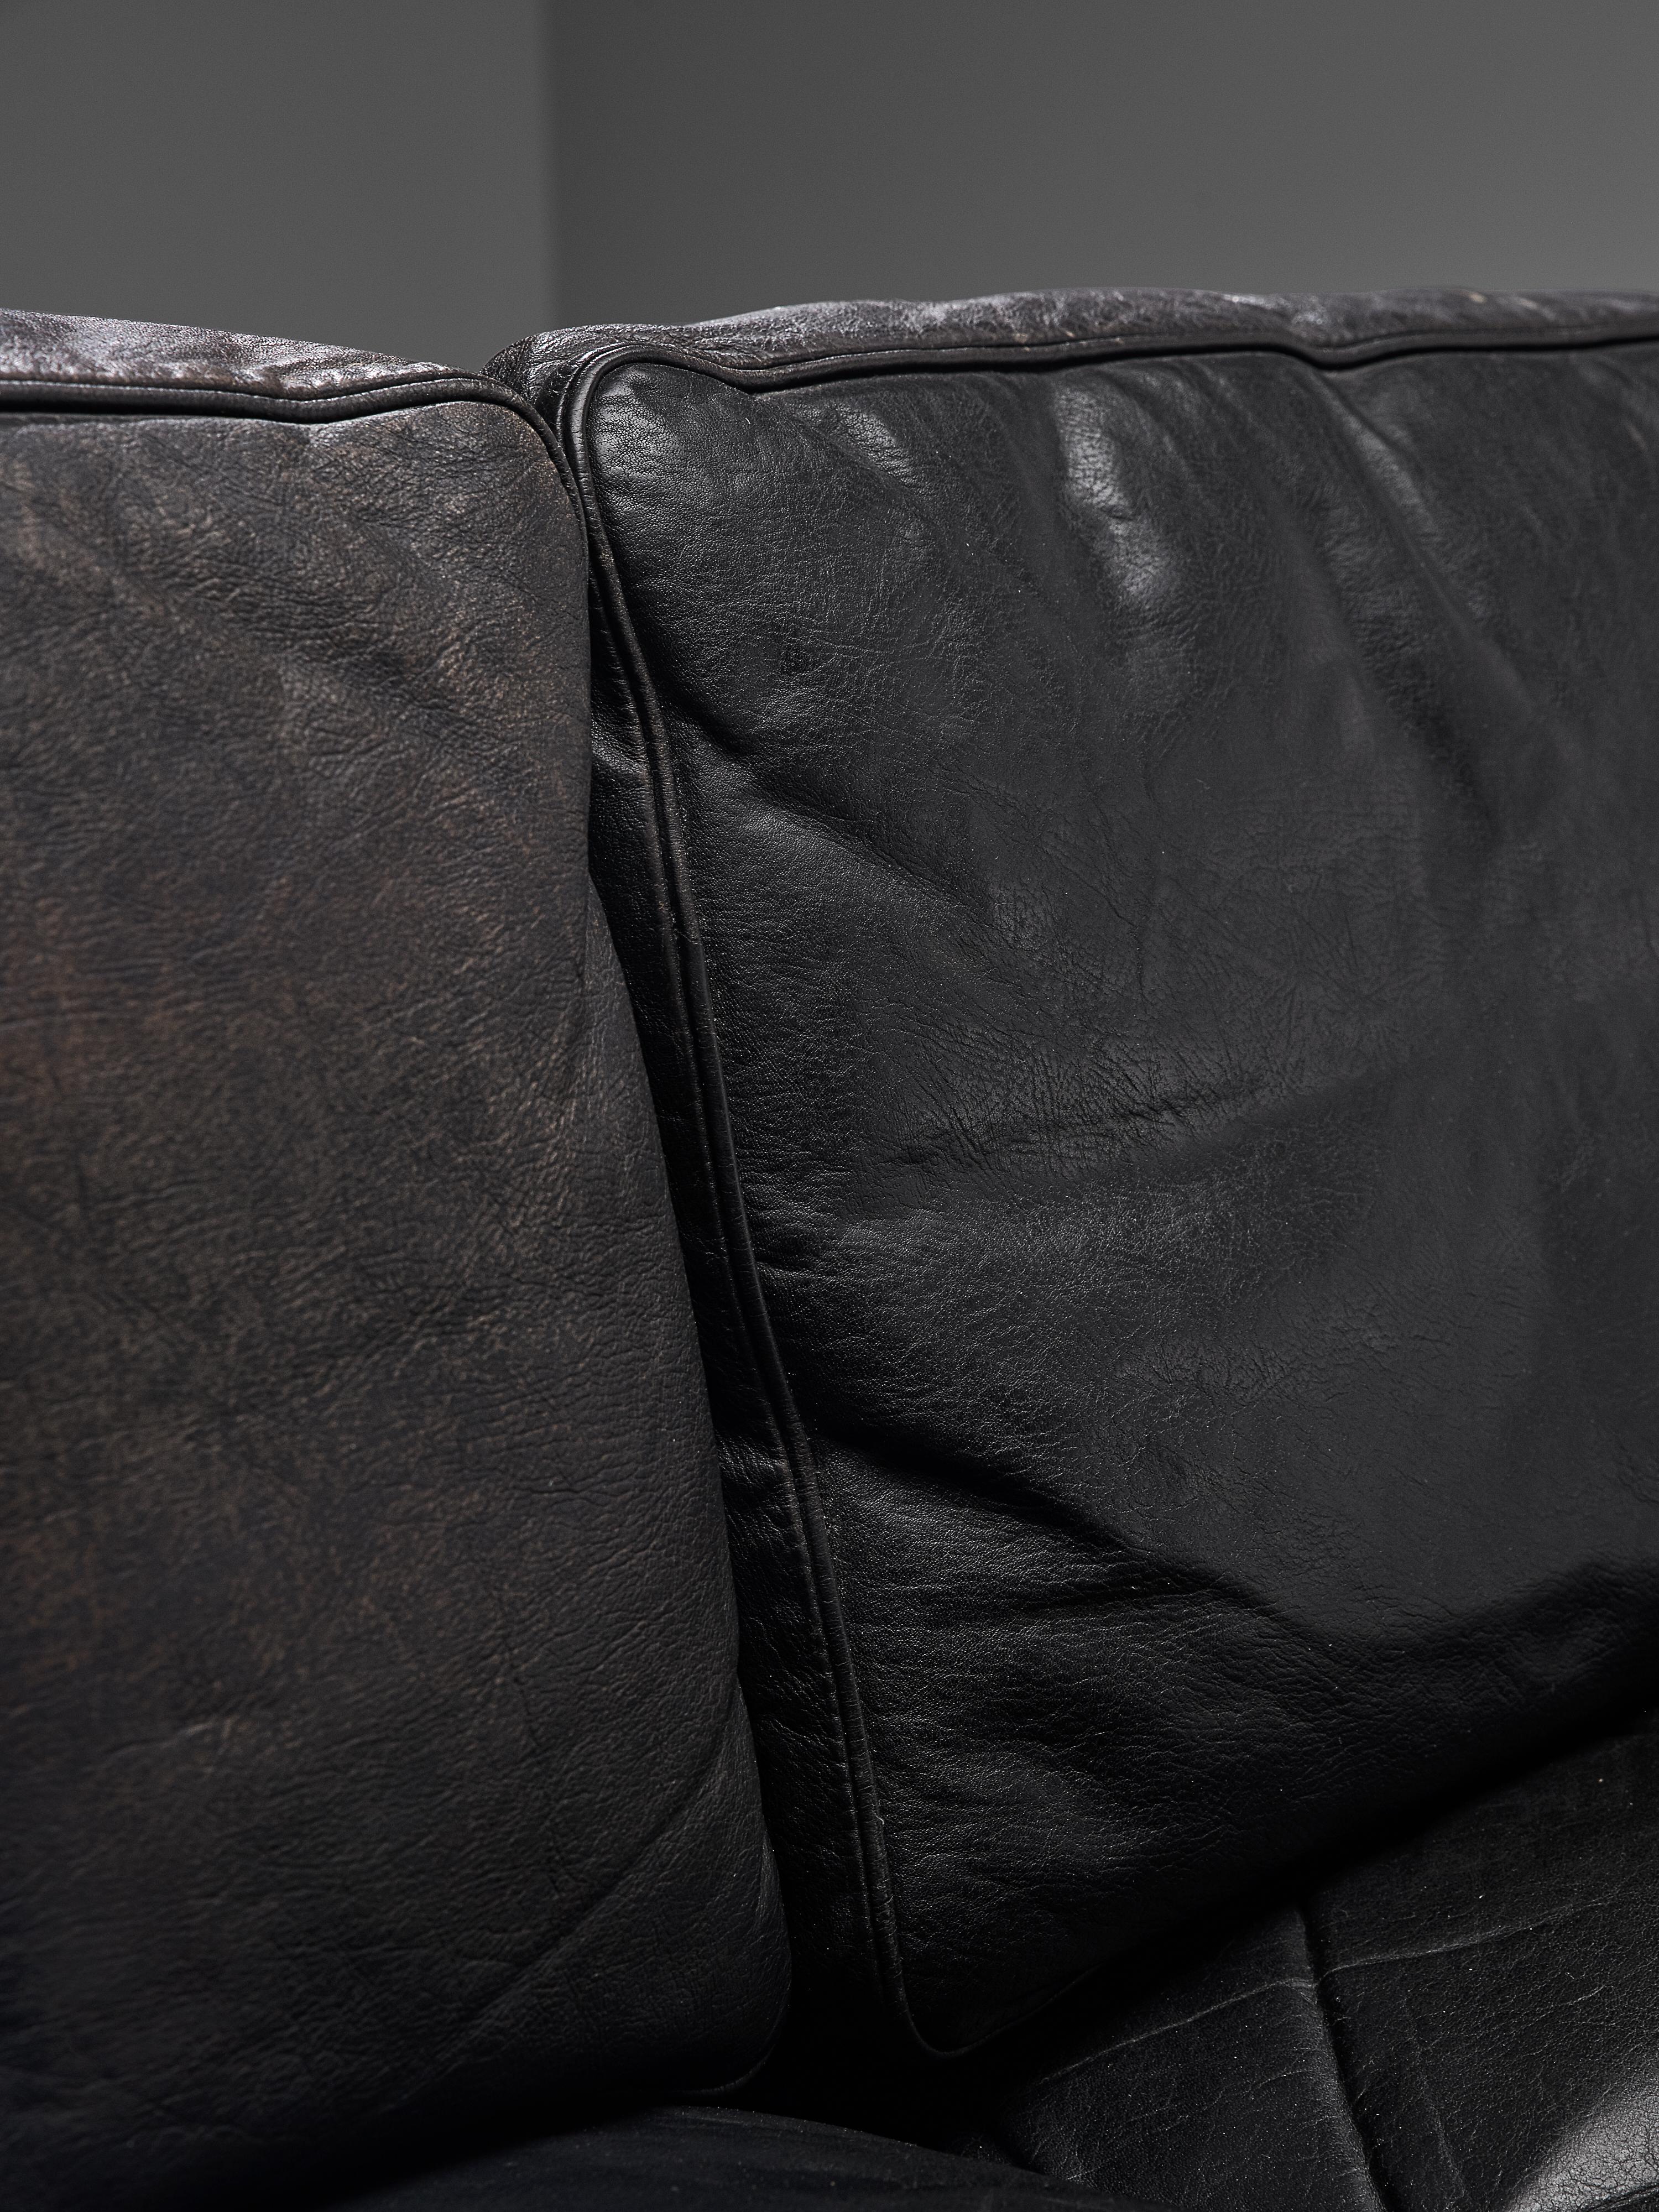 Illum Wikkelsø for Holger Christiansen Three-Seat Sofa 'V11' in Black Leather 4